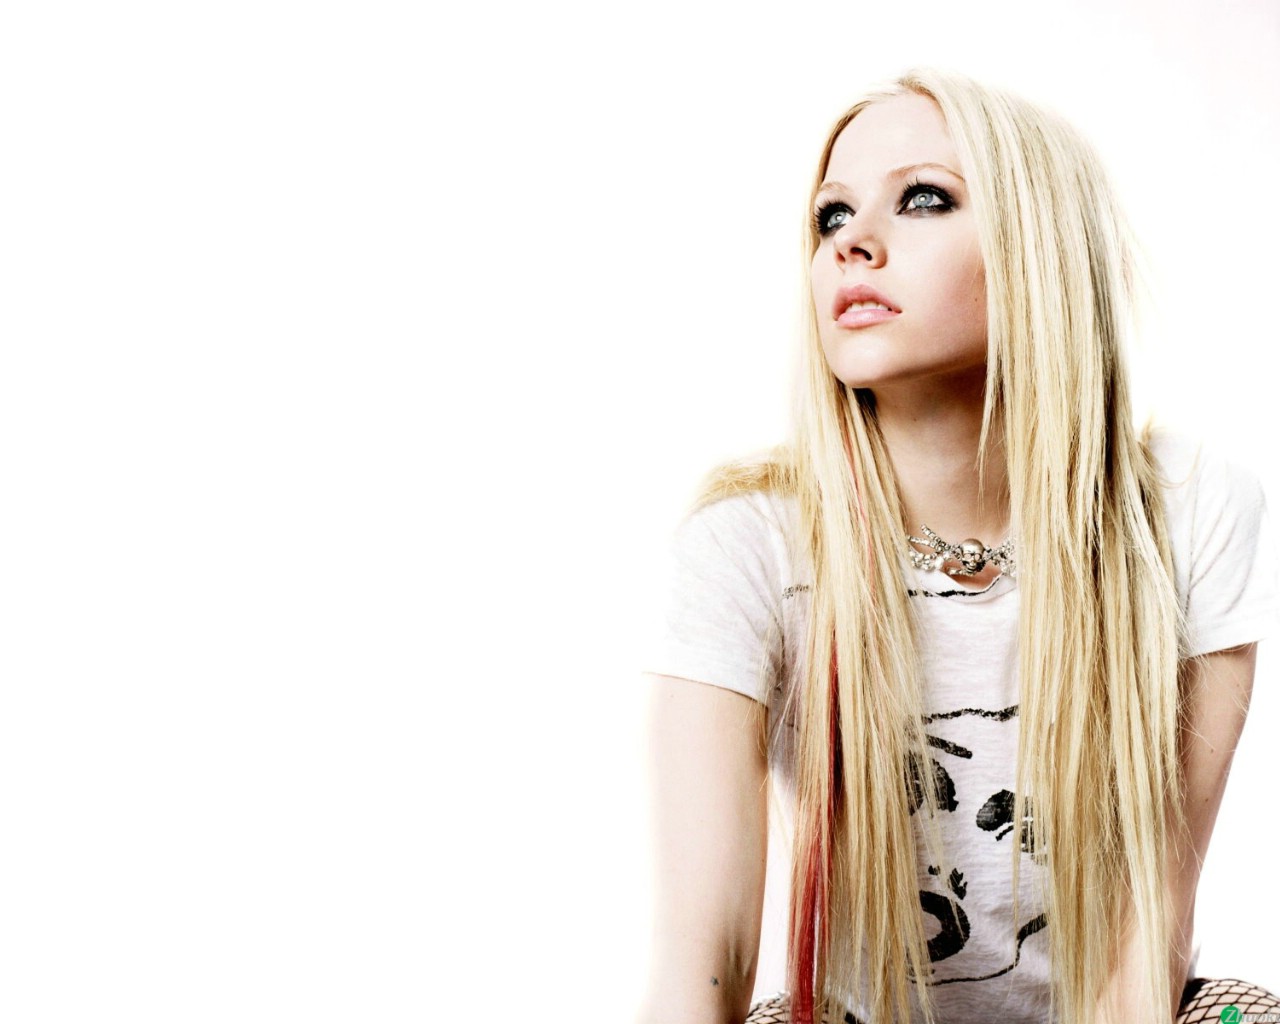 壁纸1280x1024艾薇儿 Avril Lavigne 壁纸76壁纸 艾薇儿 Avril Lavigne壁纸 艾薇儿 Avril Lavigne图片 艾薇儿 Avril Lavigne素材 明星壁纸 明星图库 明星图片素材桌面壁纸